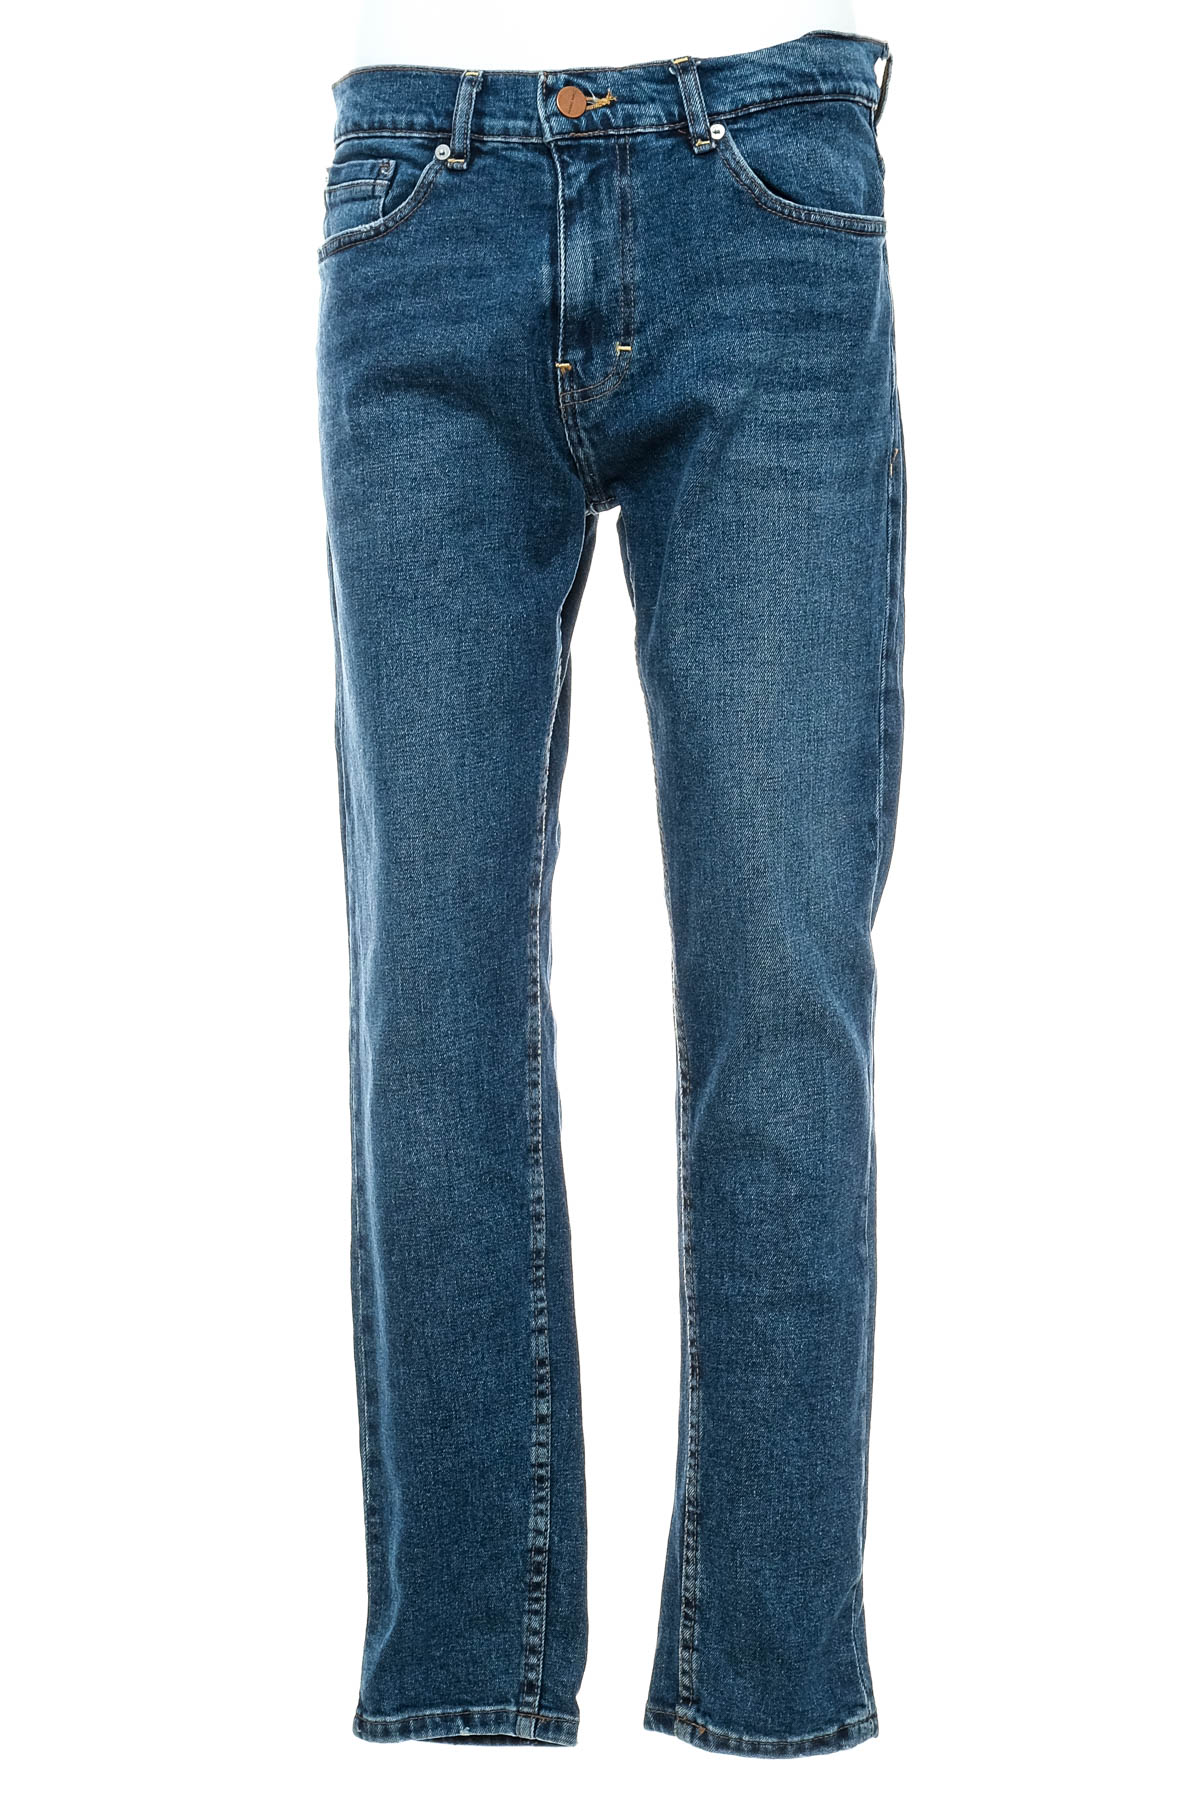 Men's jeans - ZARA - 0